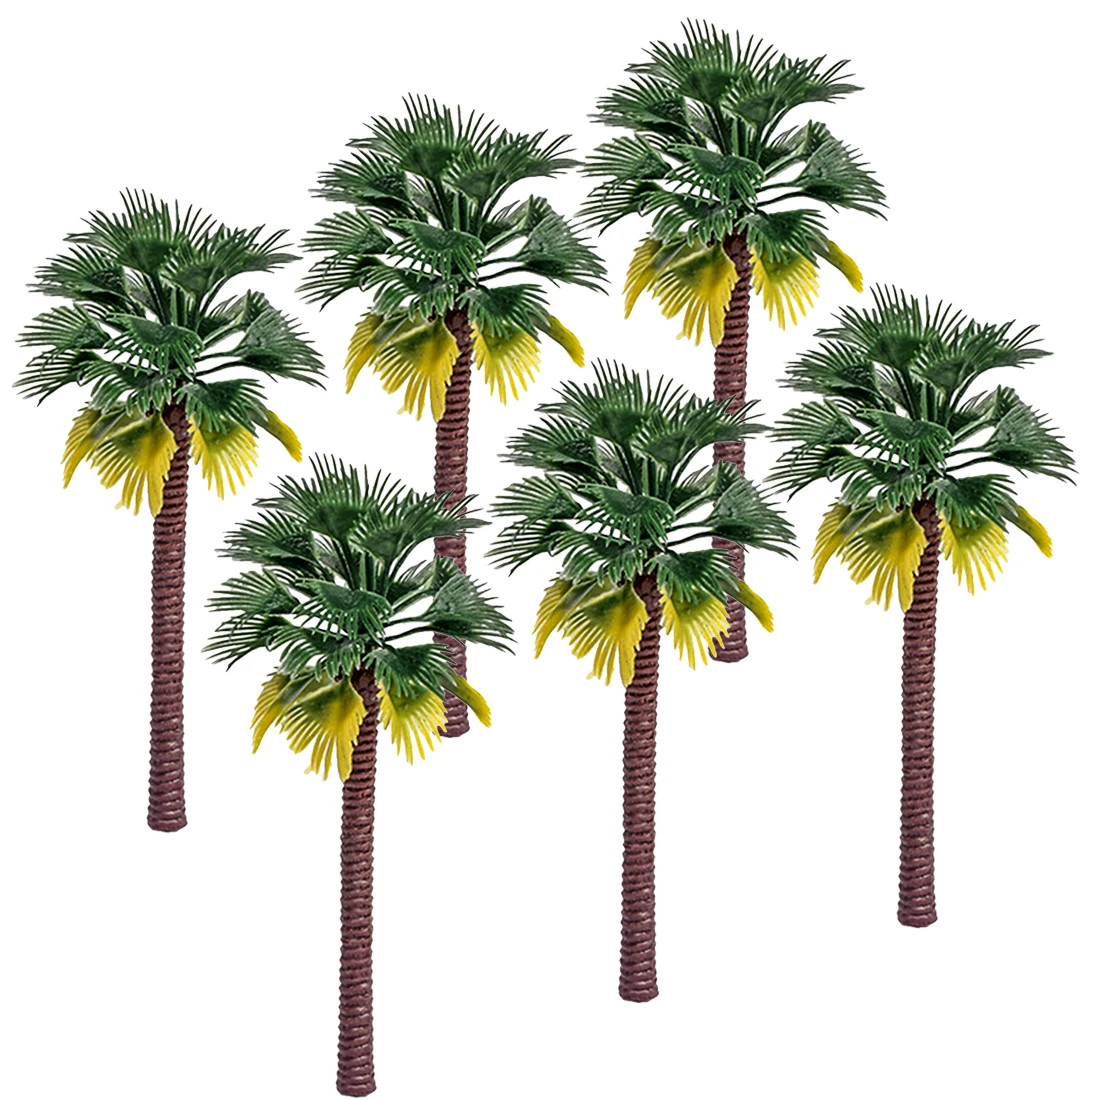 10 stücke/50 stücke 7cm - 15cm Kunststoff Coconut Palm Baum Zug Eisenbahn Architektur Diorama Baum Modell decor Kits zubehör